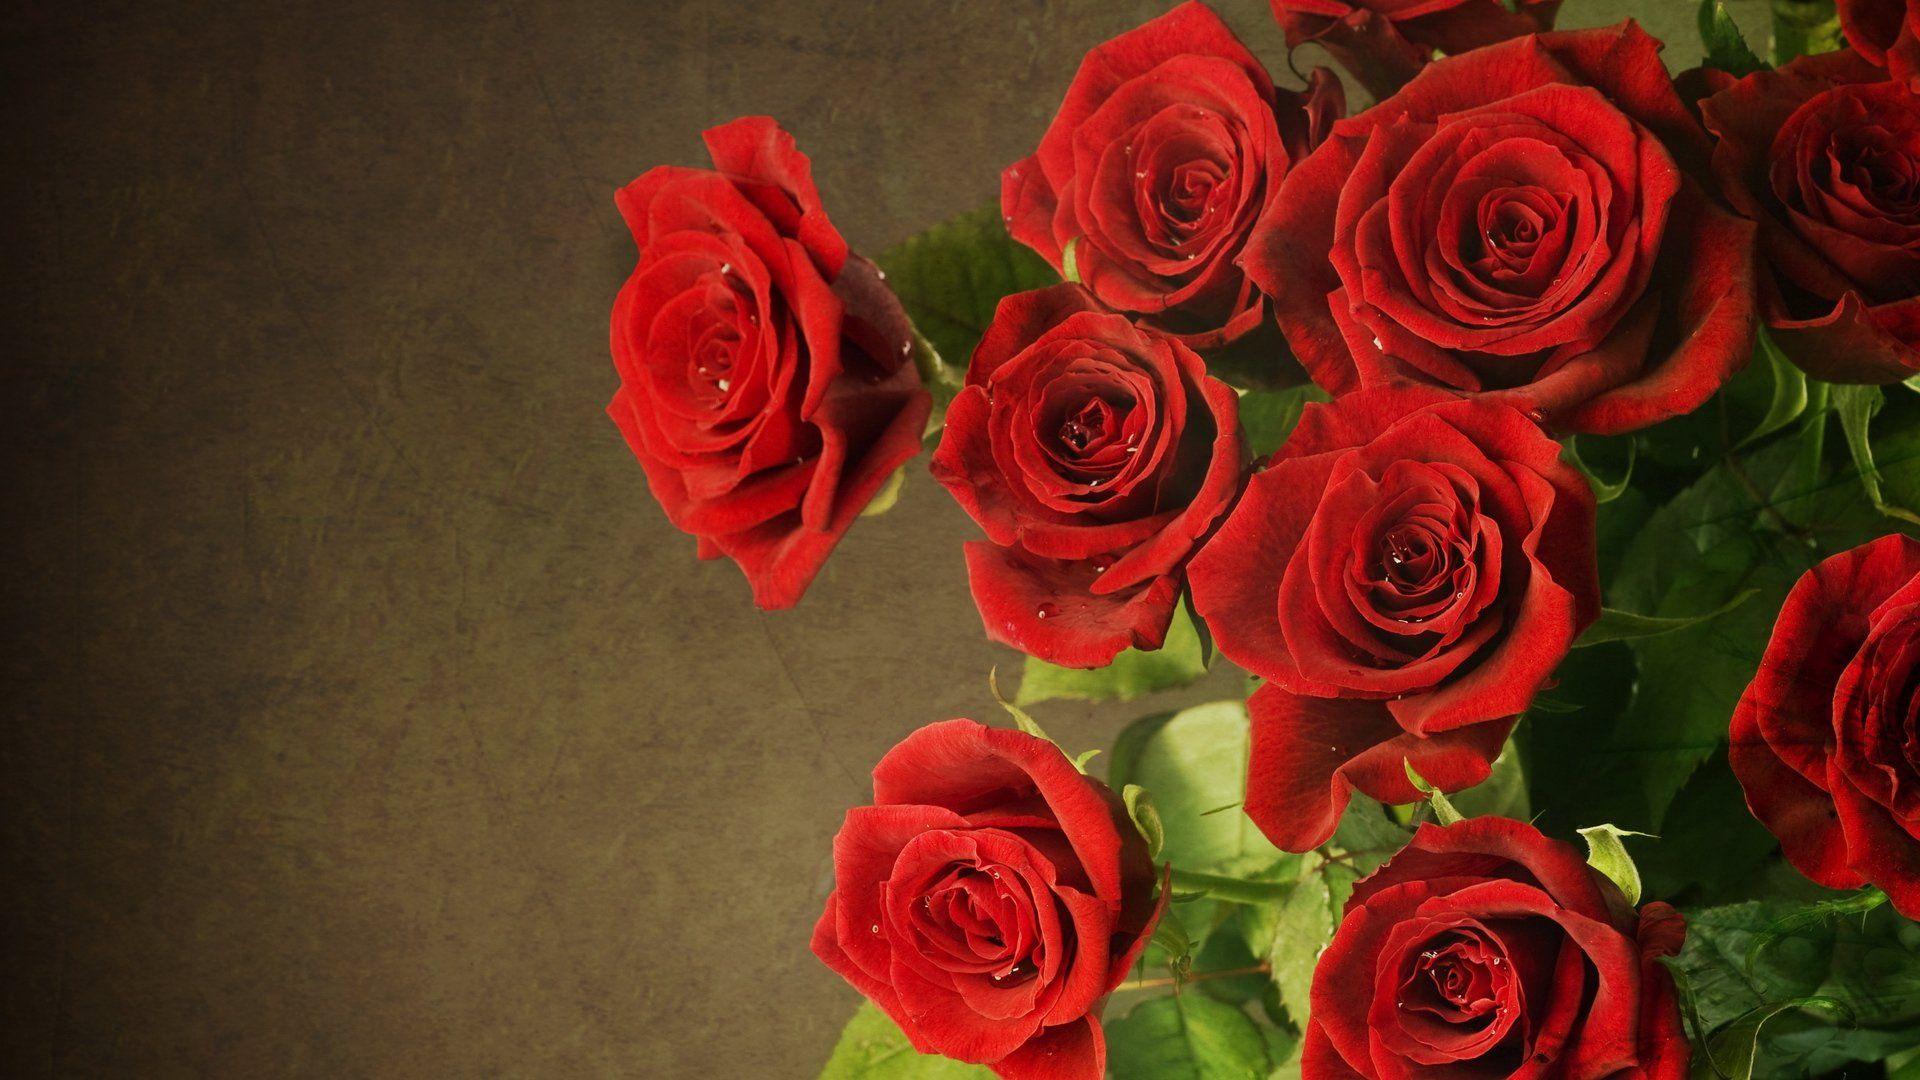 Rose Wallpaper For HD Desktop Roses Of Smartphone Pics